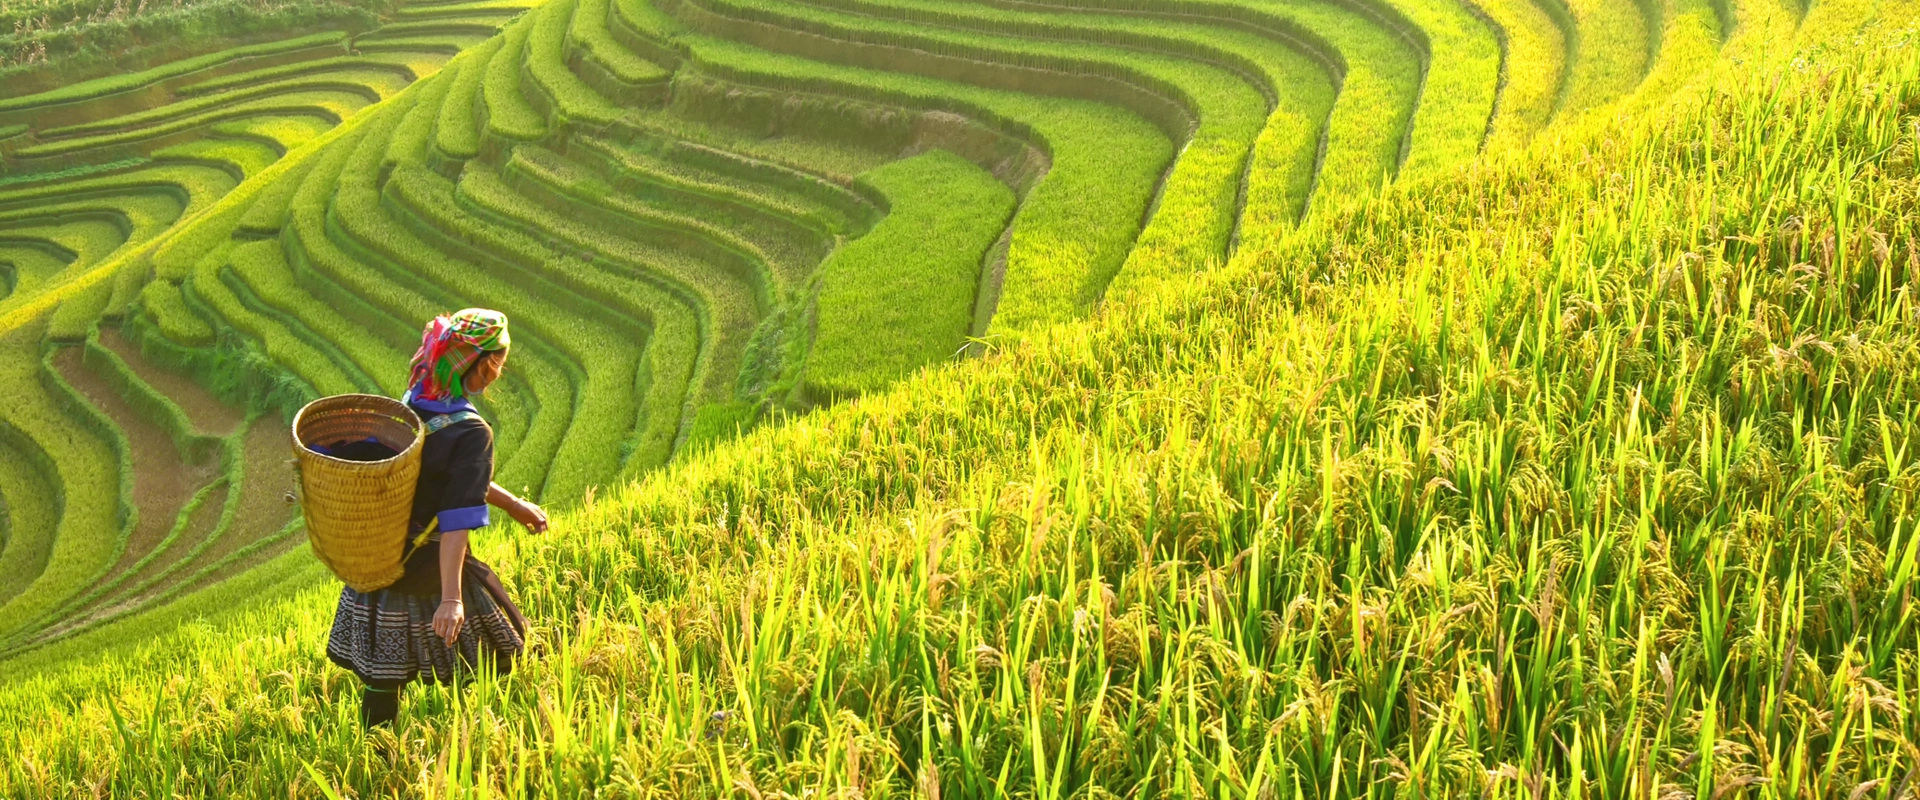 circuit vietnam 15 jours riziere agriculture